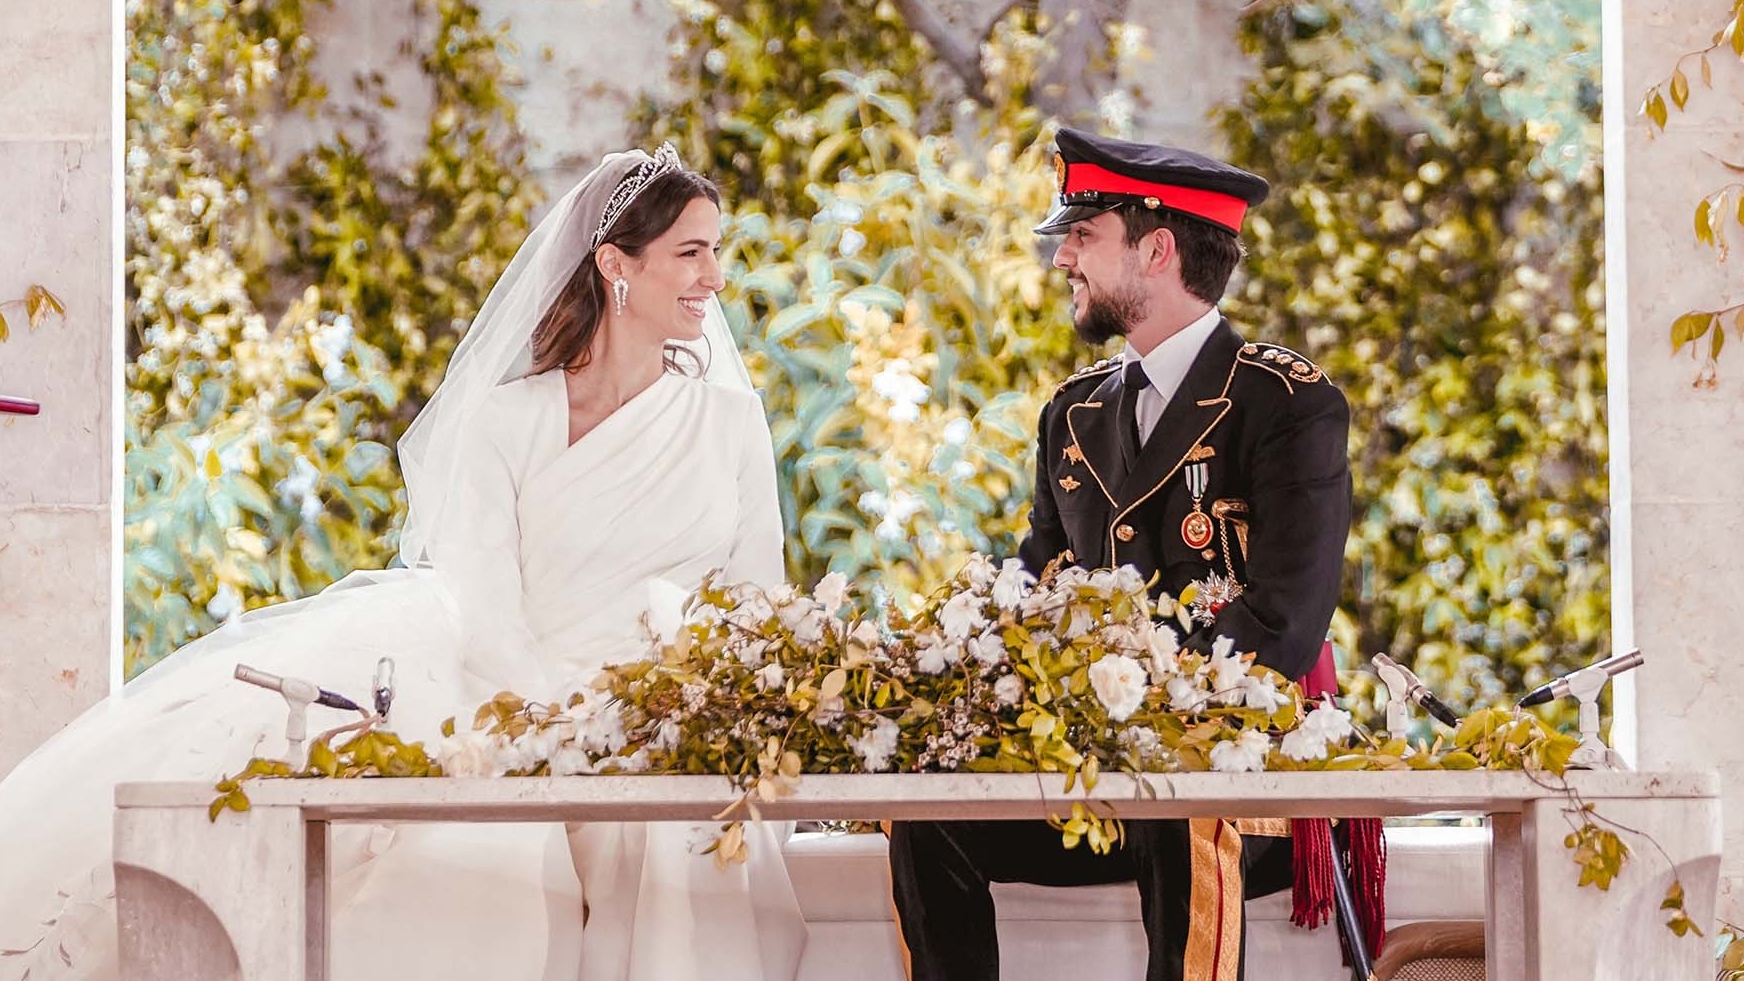 Jordania declaró “princesa” a Rajwa Al Seif tras su boda con el príncipe heredero